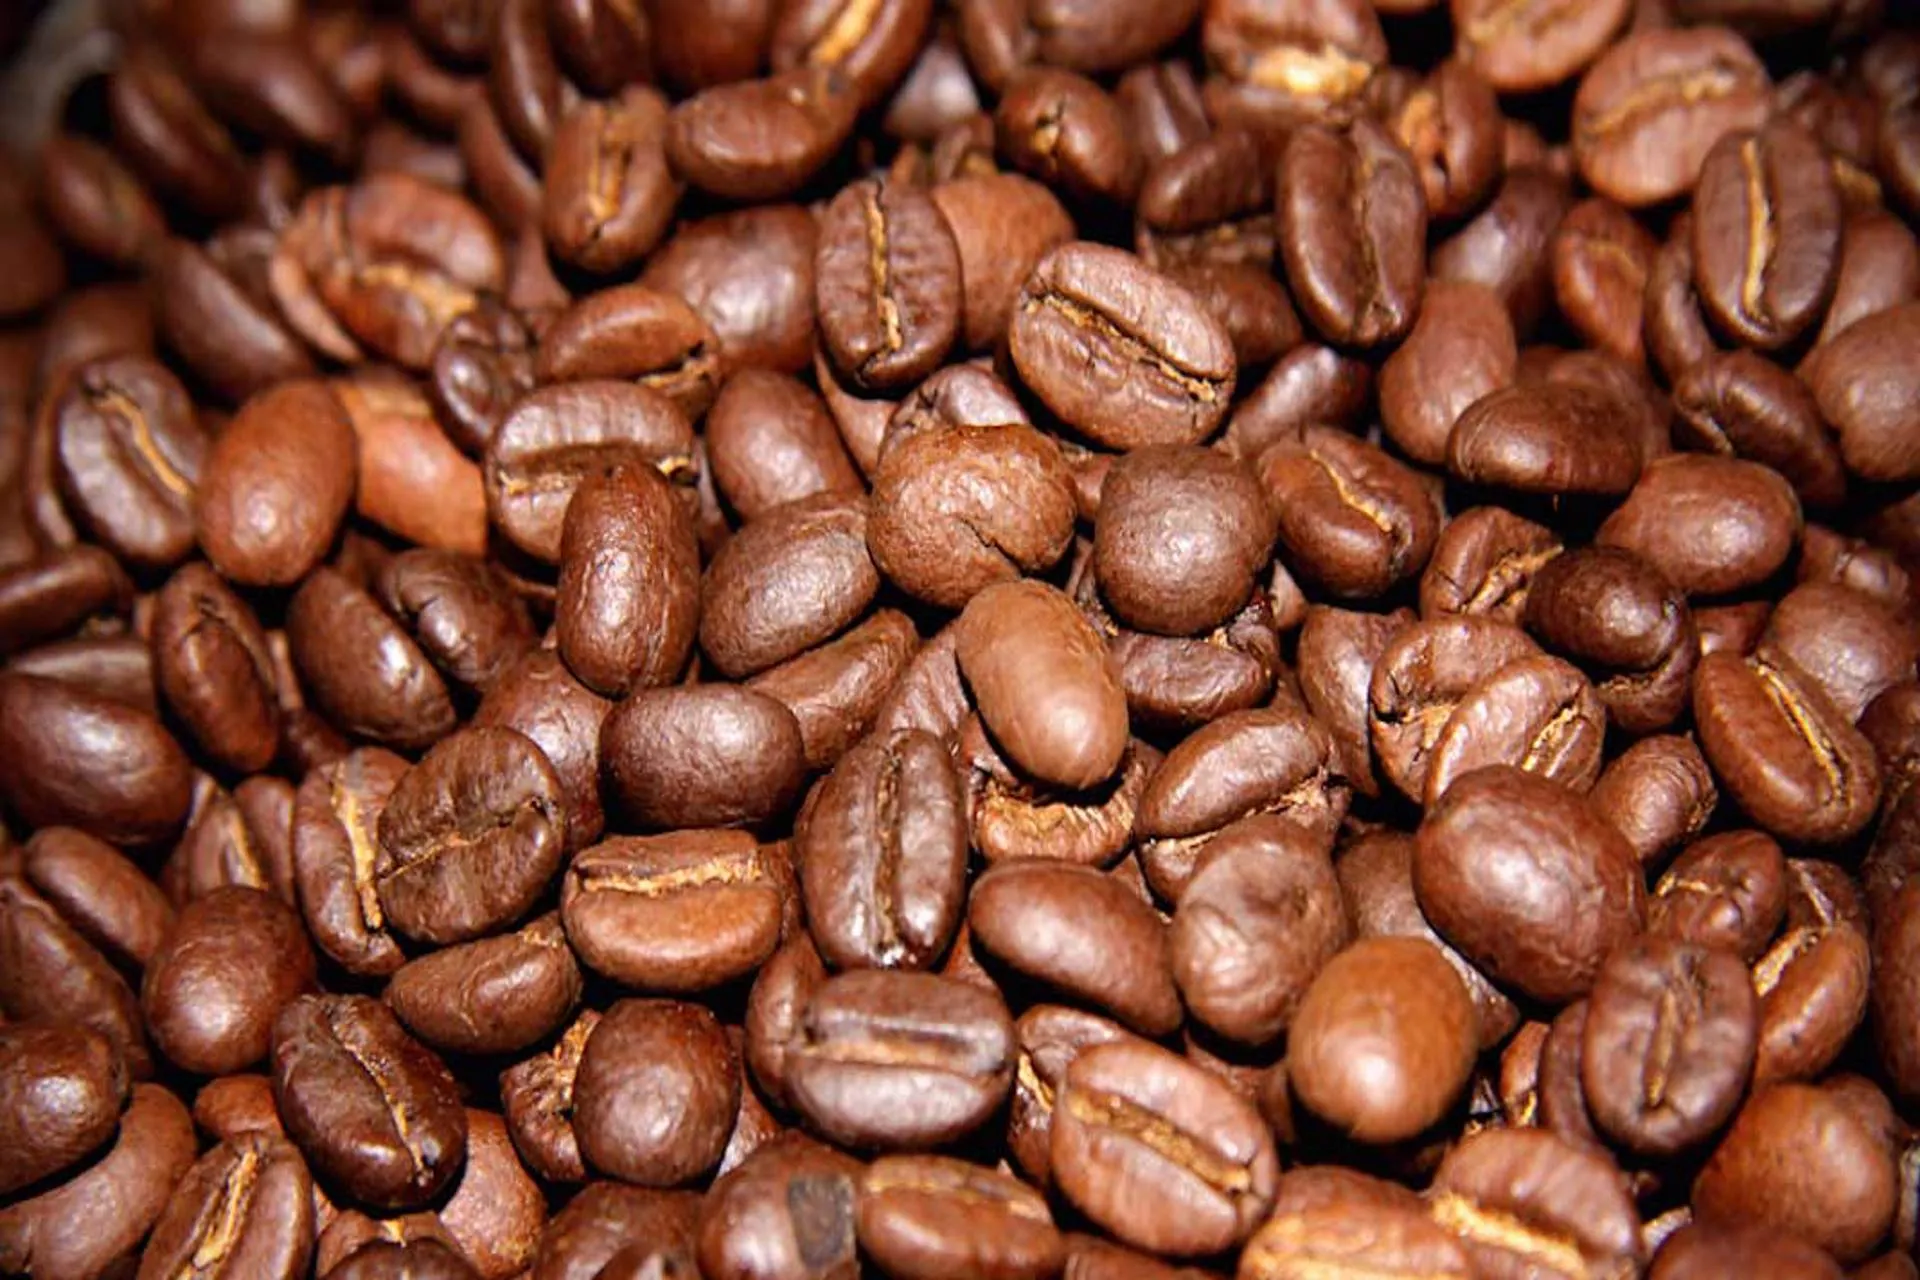 Colombia promociona los caminos del café, el cual es considerado como uno de los parques temáticos más importantes de Latinoamérica